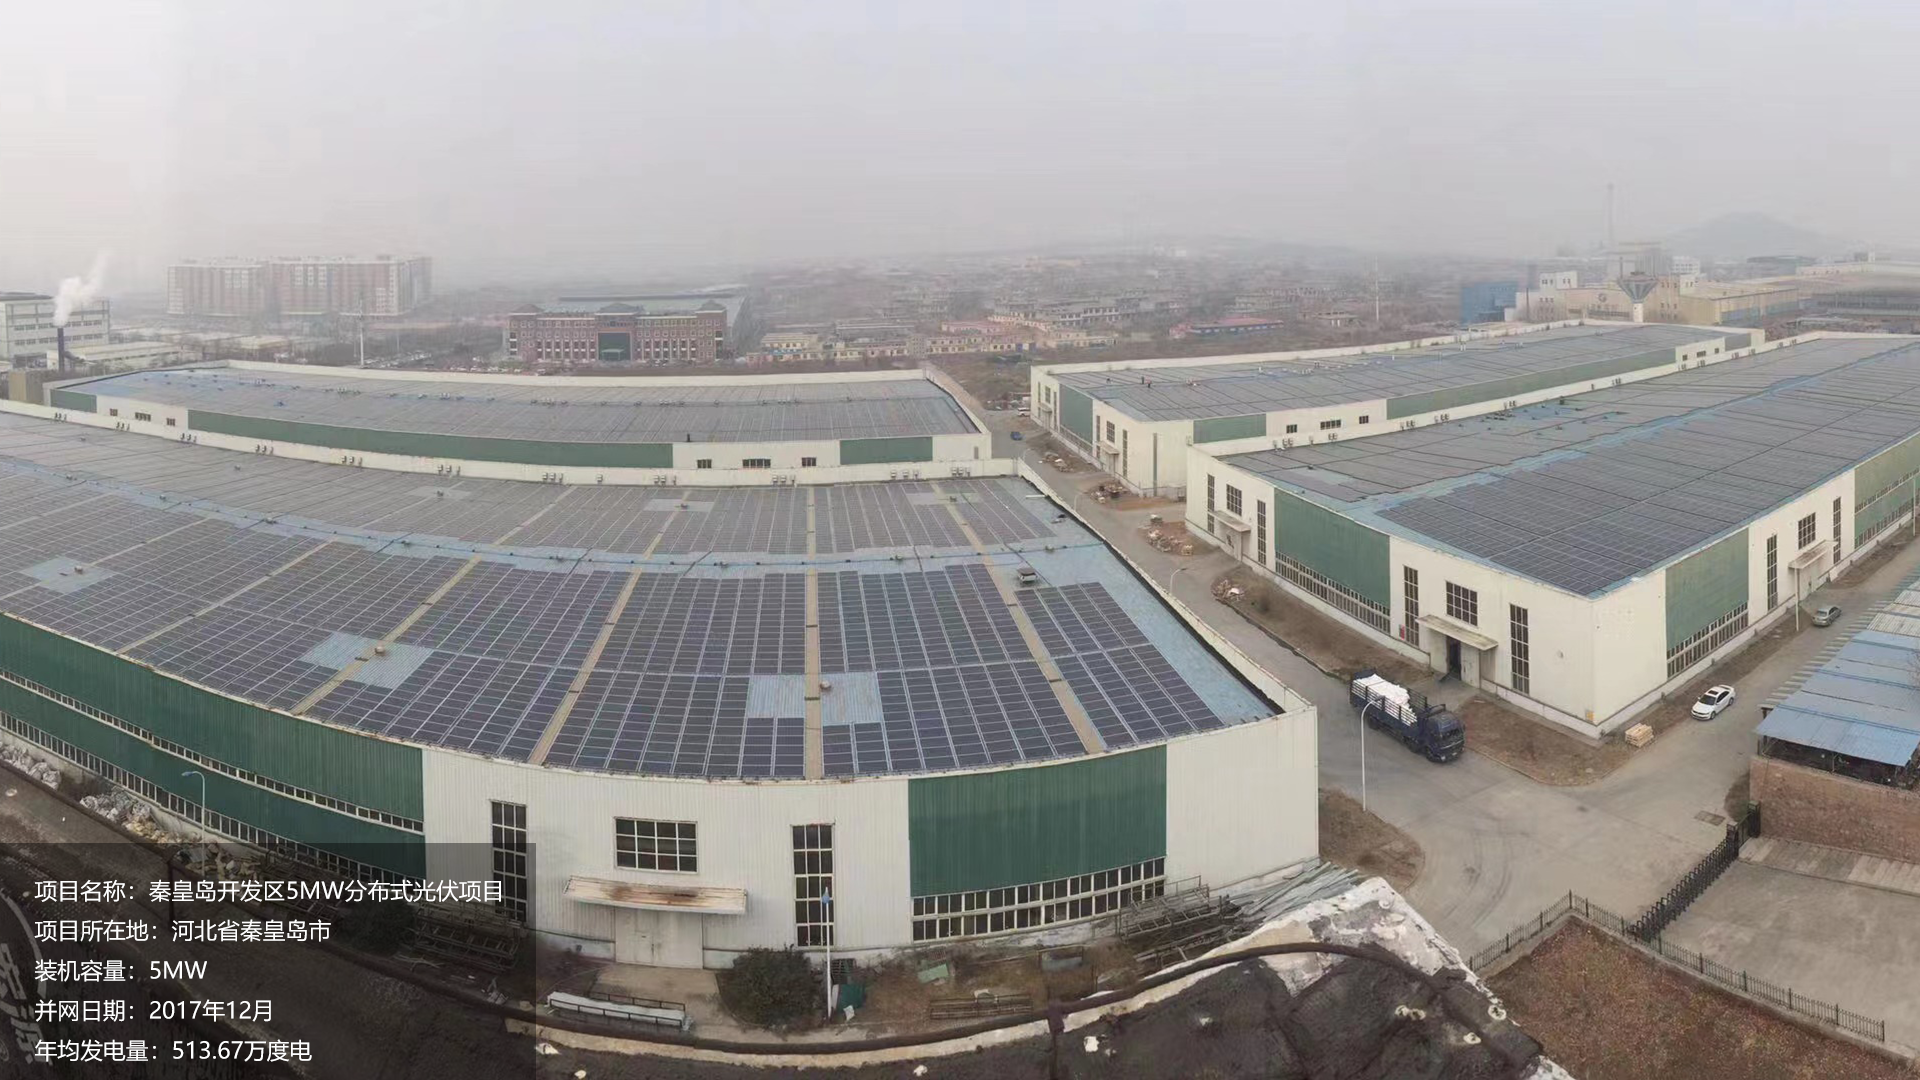 秦皇岛开发区项目总装机容量5MW，项目位于河北省秦皇岛市，于2017年12月并网发电，年均发电量约515万度。			